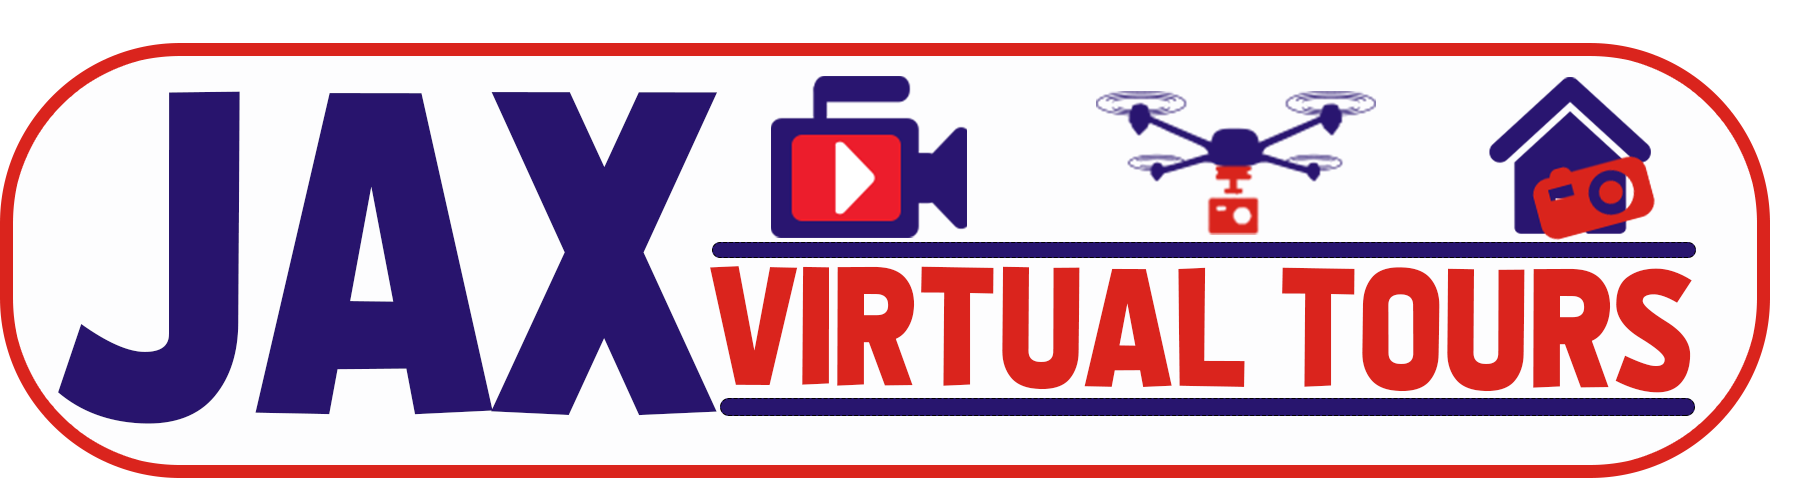 Jax Virtual Tours logo